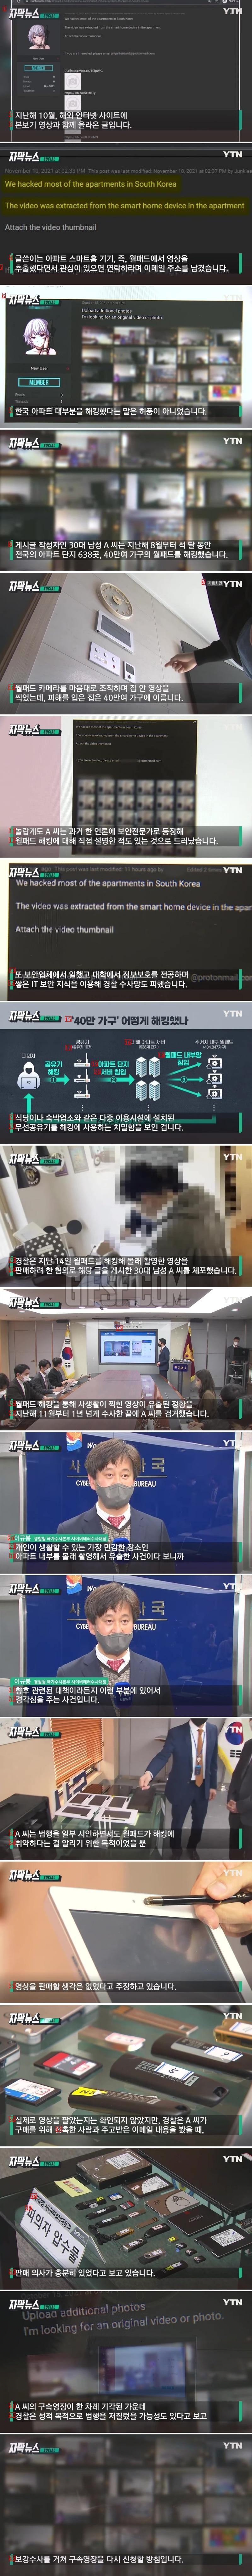 한국 아파트 대부분 해킹 ...허풍이 아니었던 그 말.news